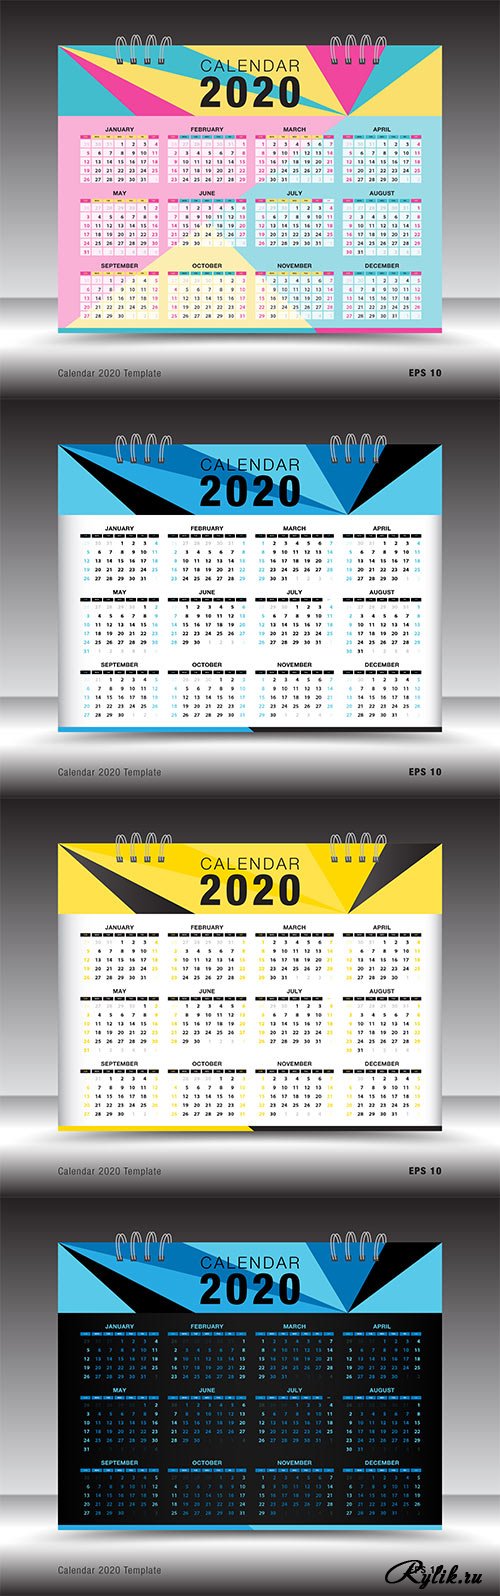 Календарь 2020 г. многоярусный